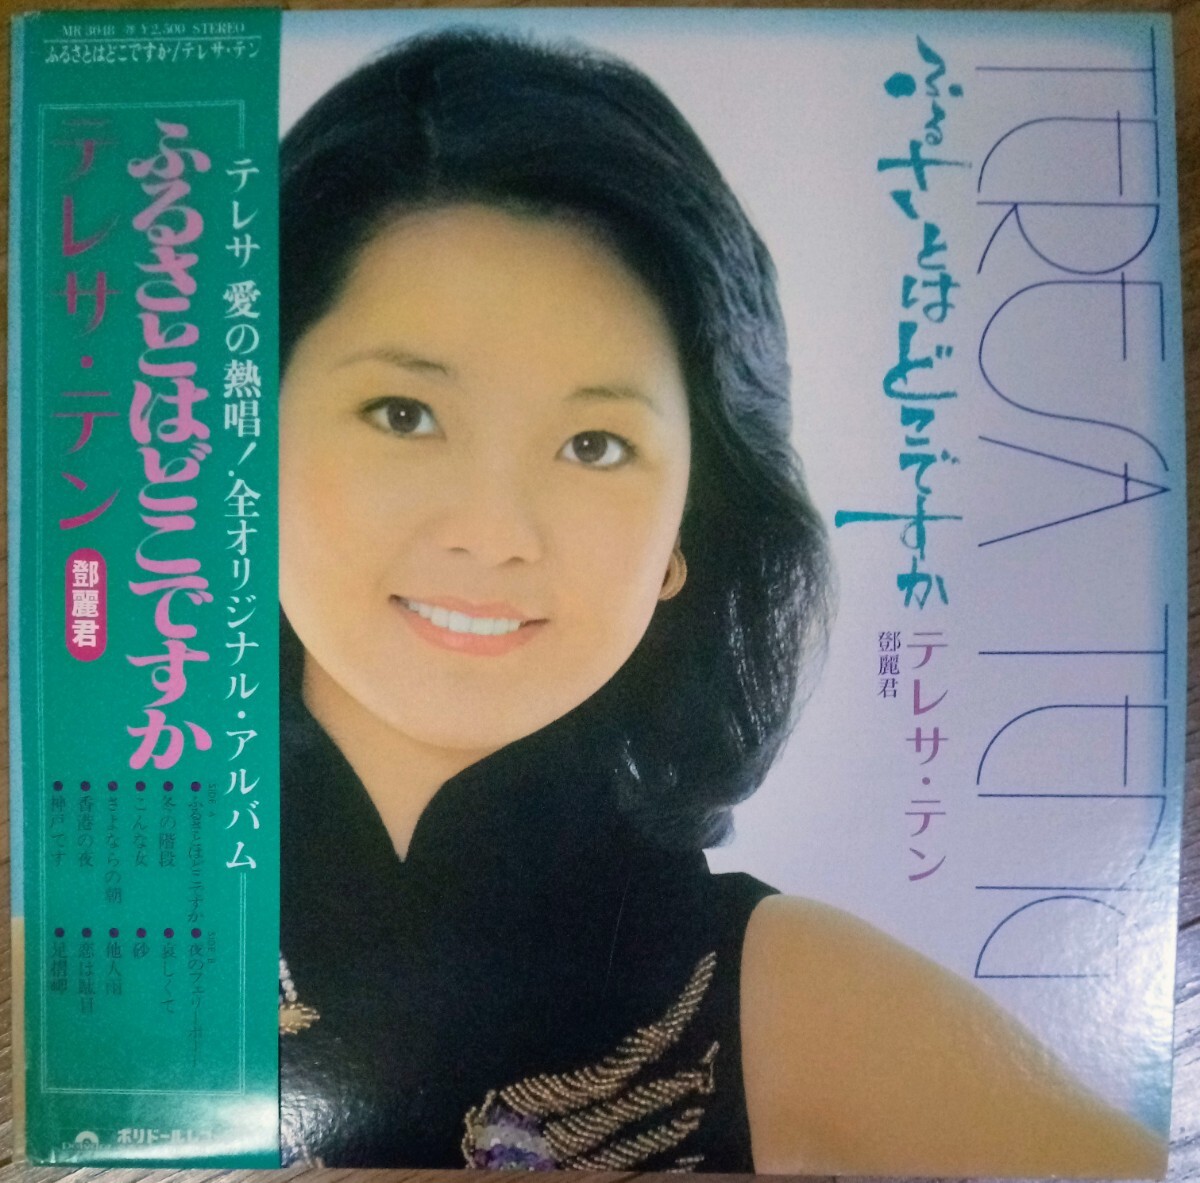 貴重盤・帯付・オリジナル盤 / テレサ・テン / ふるさとはどこですか (JAPAN 日本盤 Vinyl LP レコード) OBI / 鄧麗君 / TERESA TENGの画像1